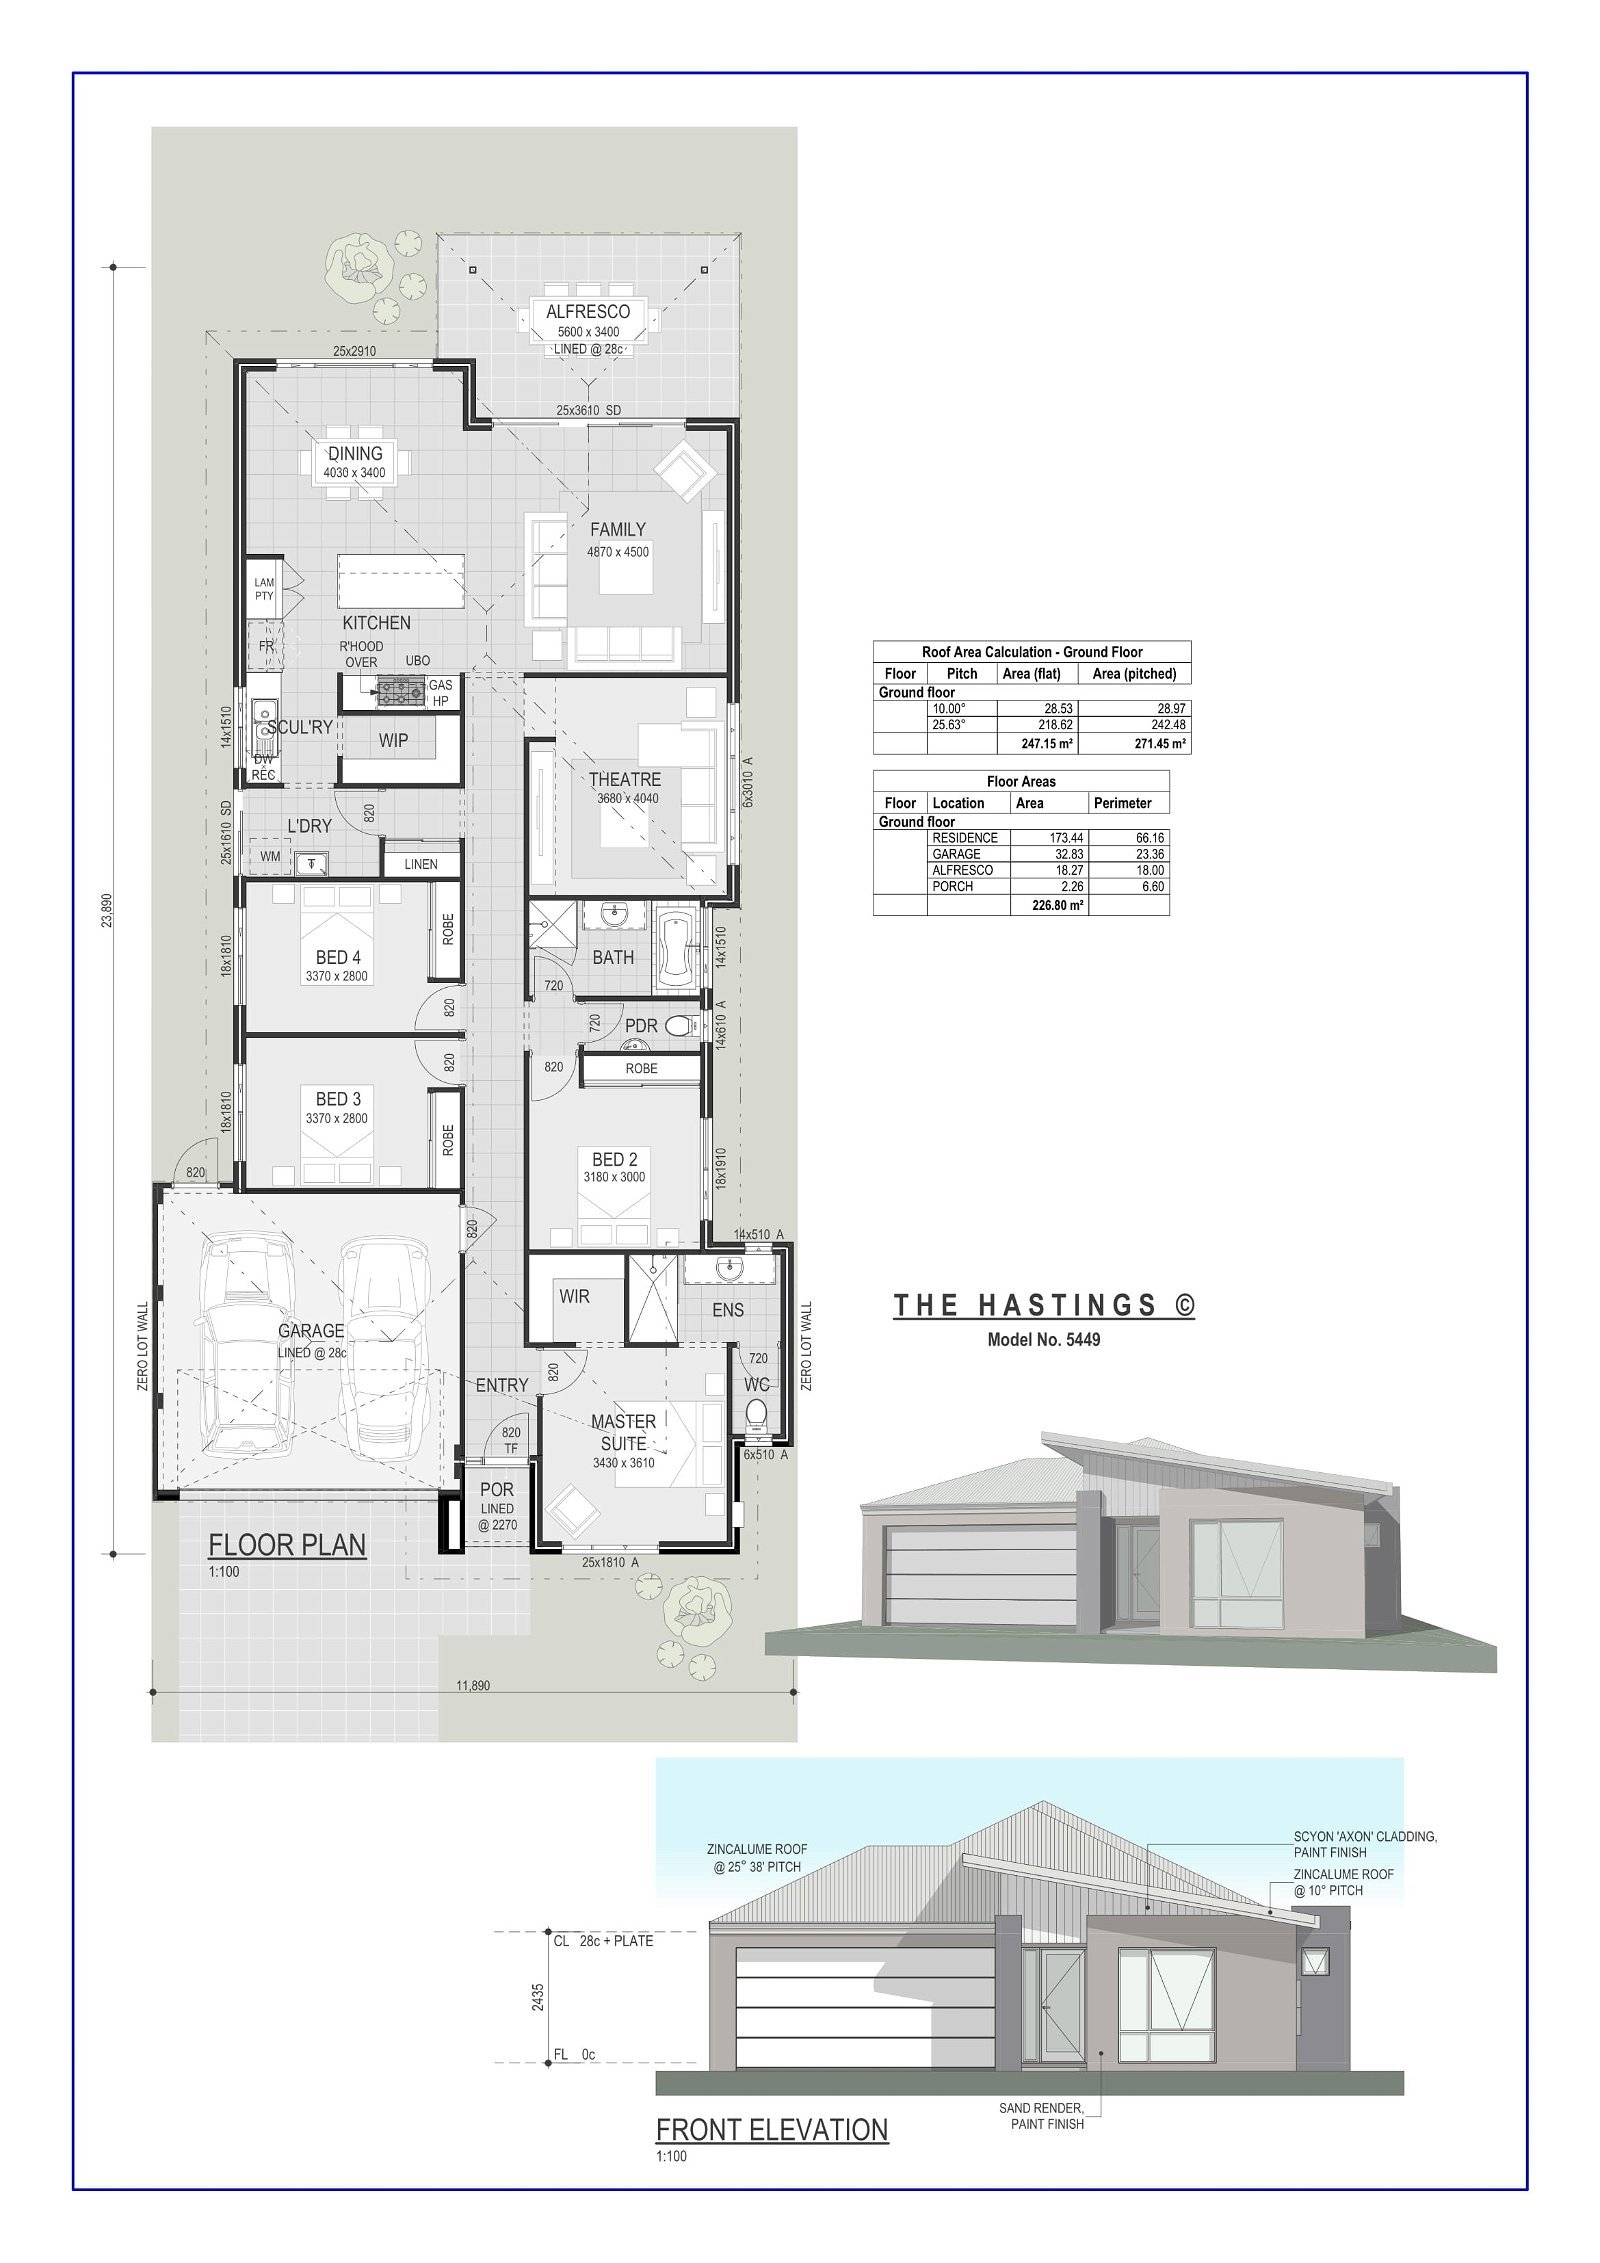 Residential Building Wa -  - Floorplan - The Hastings 1